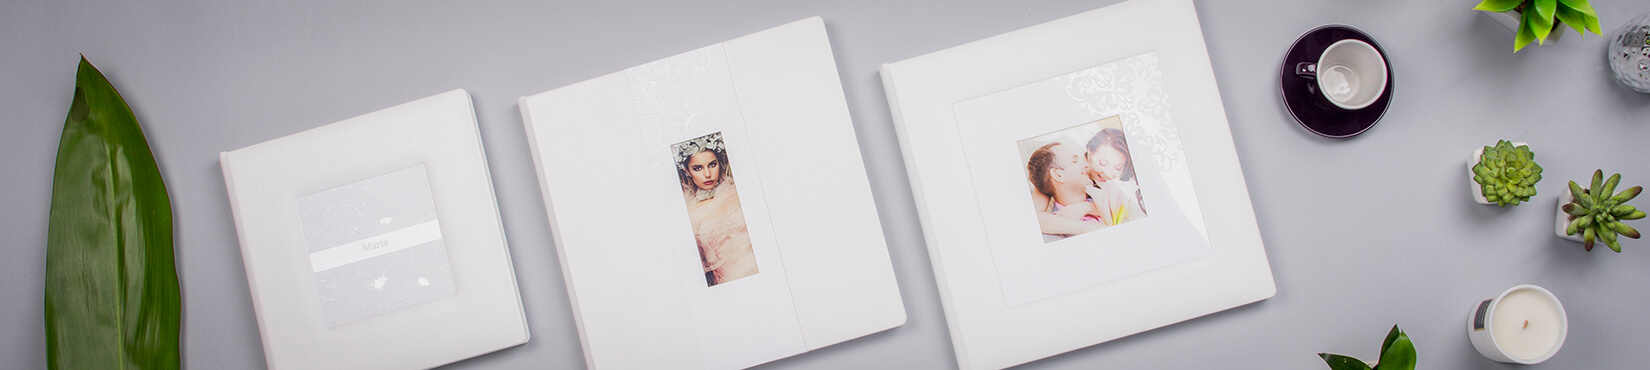 Kollektion Weisse Perle Complete Album Set für professionelle Fotografen nPhoto 2